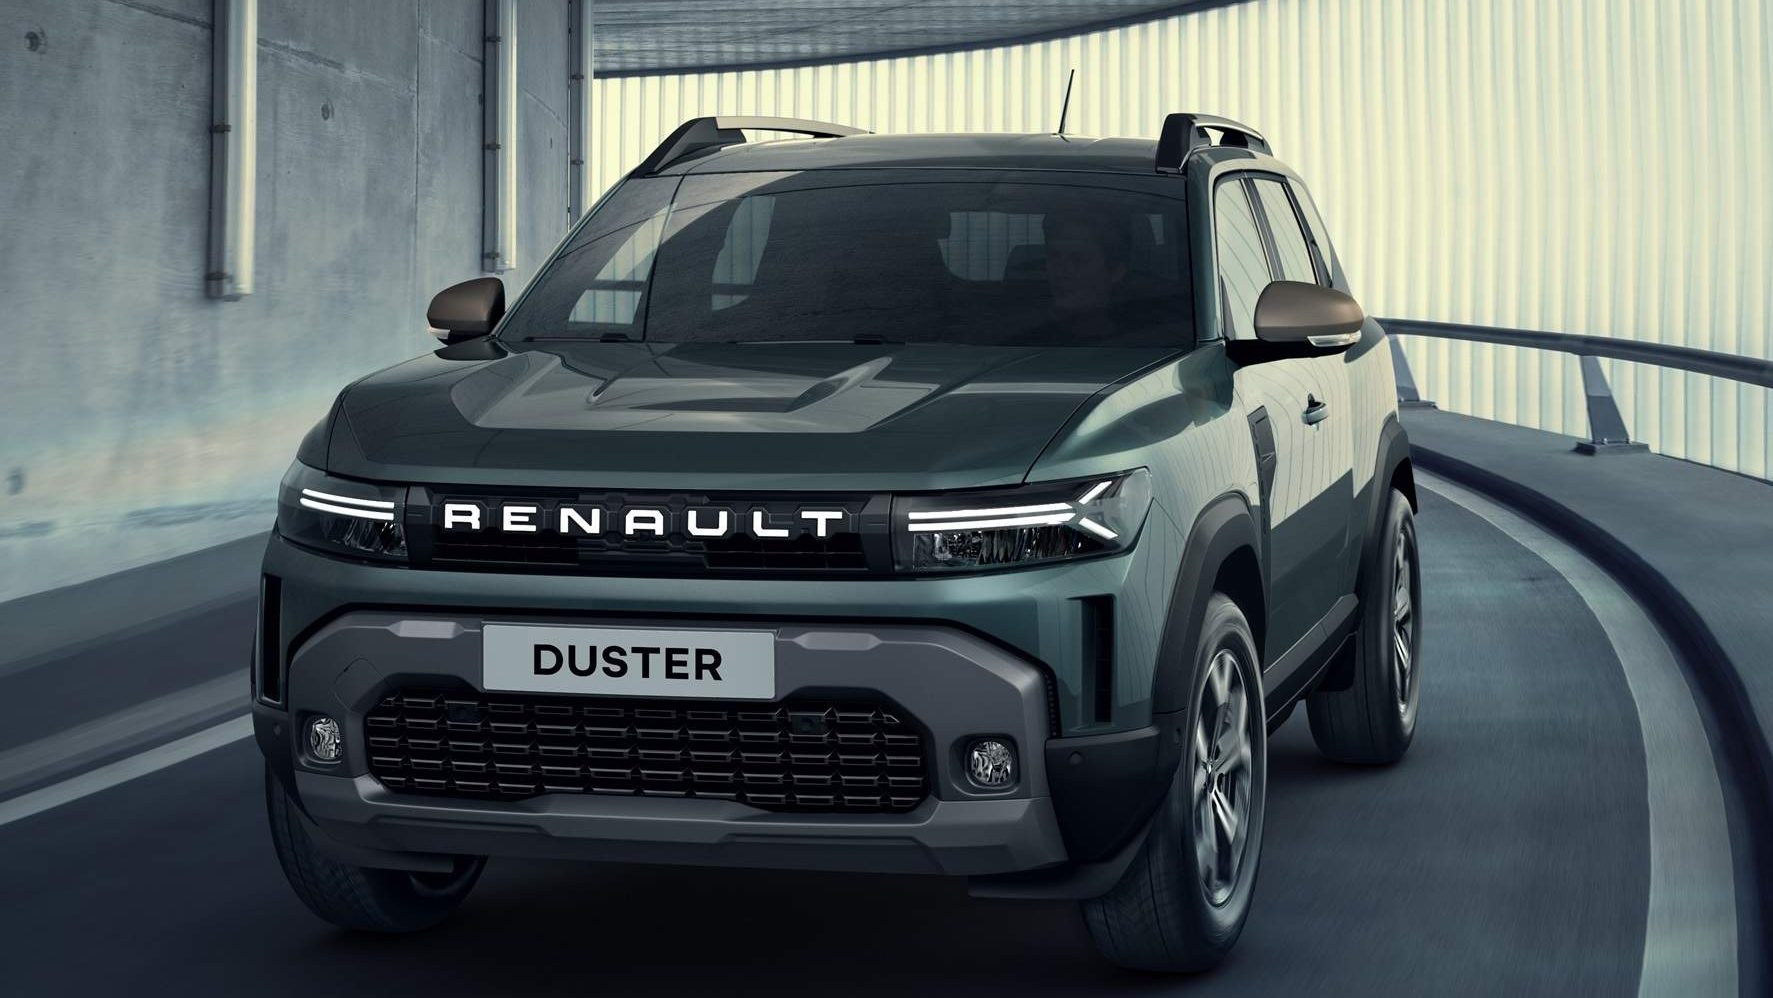 Nova geração do Renault Duster é revelada, mas não se anime muito